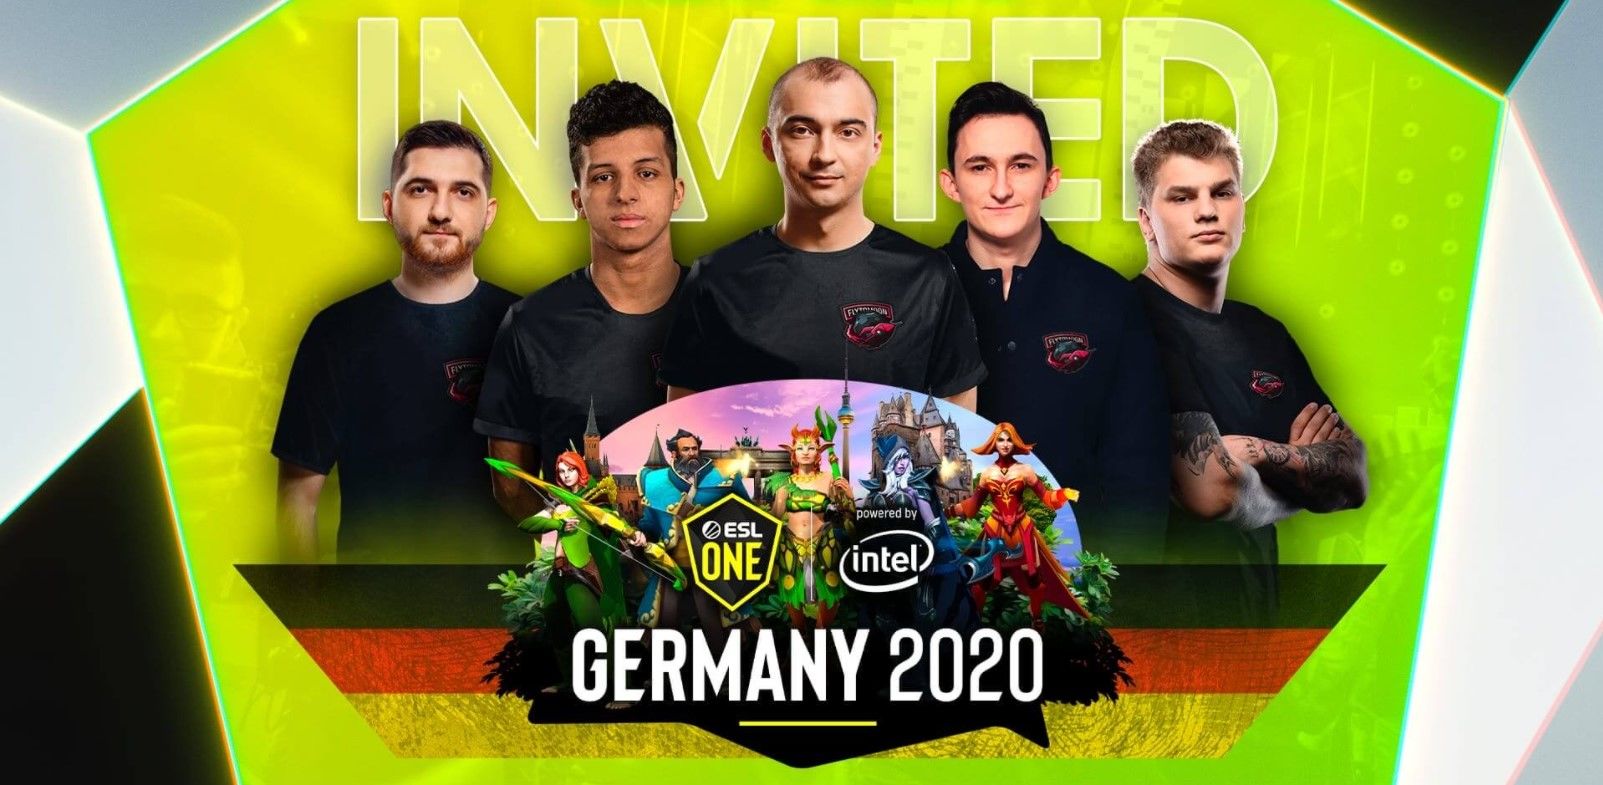 Tekcac: NaVi выйдут в плей-офф ESL One Germany 2020